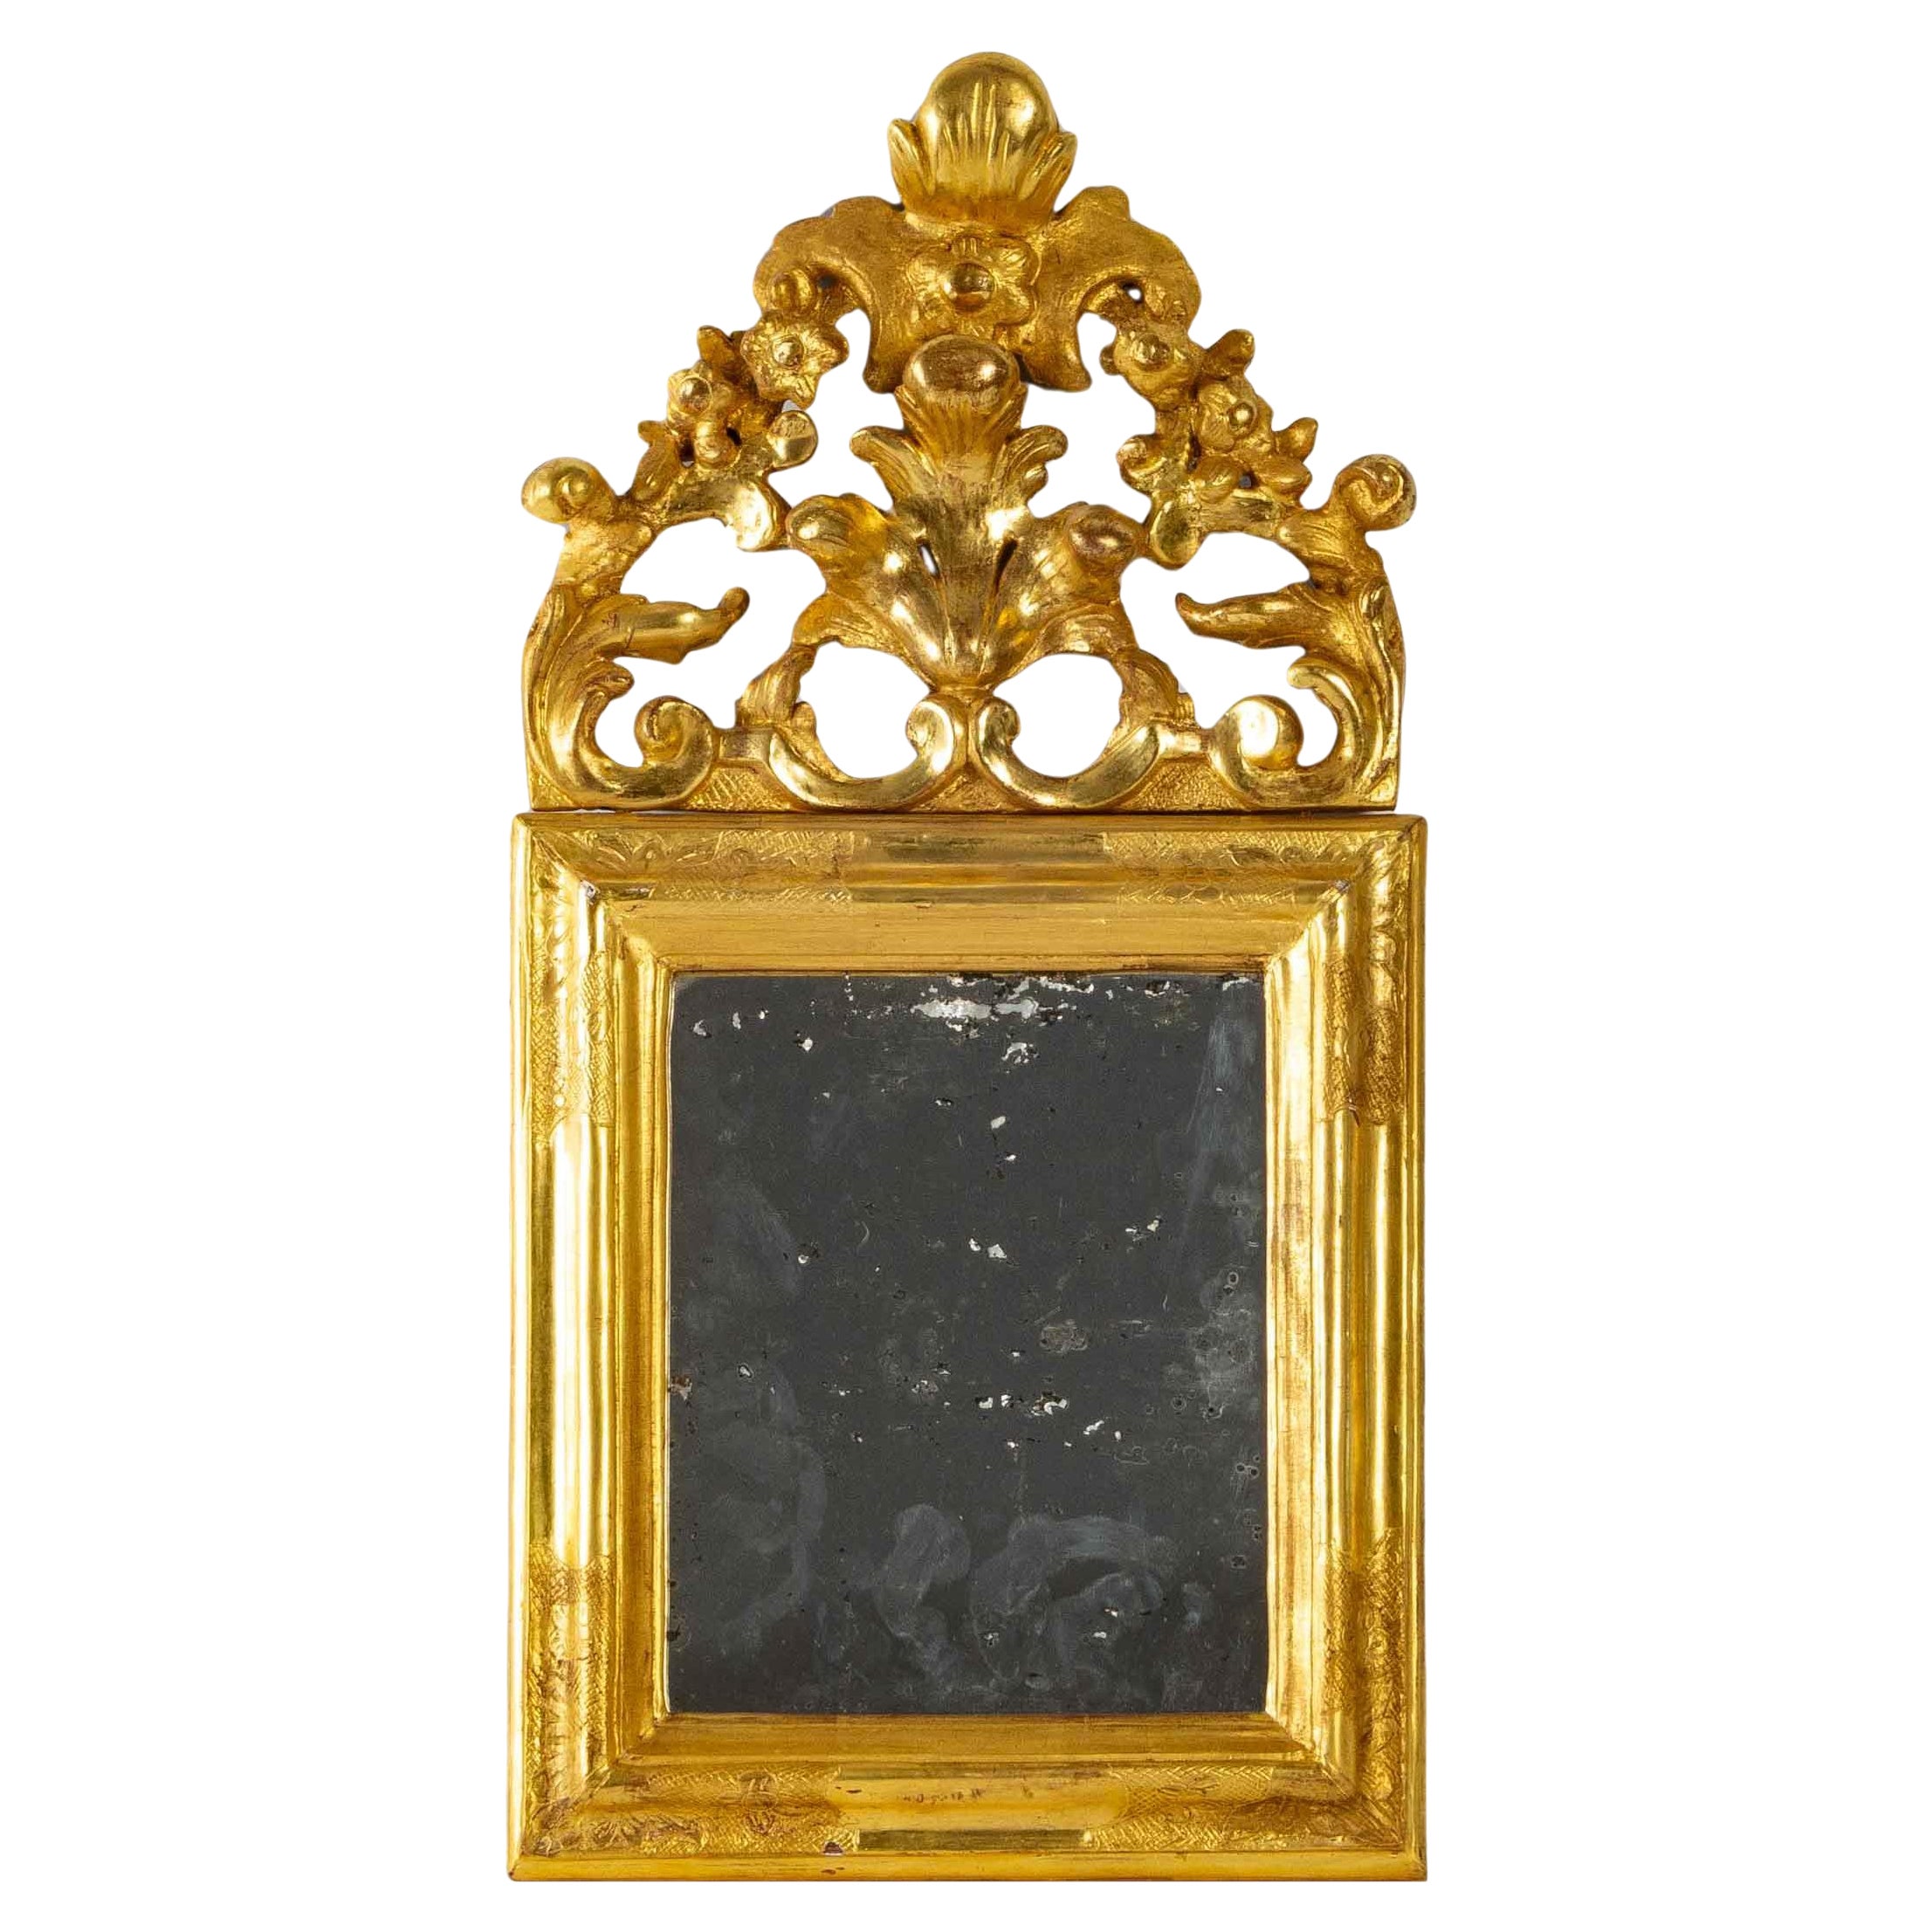 Miroir en bois doré mercuré - Période : Louis XV